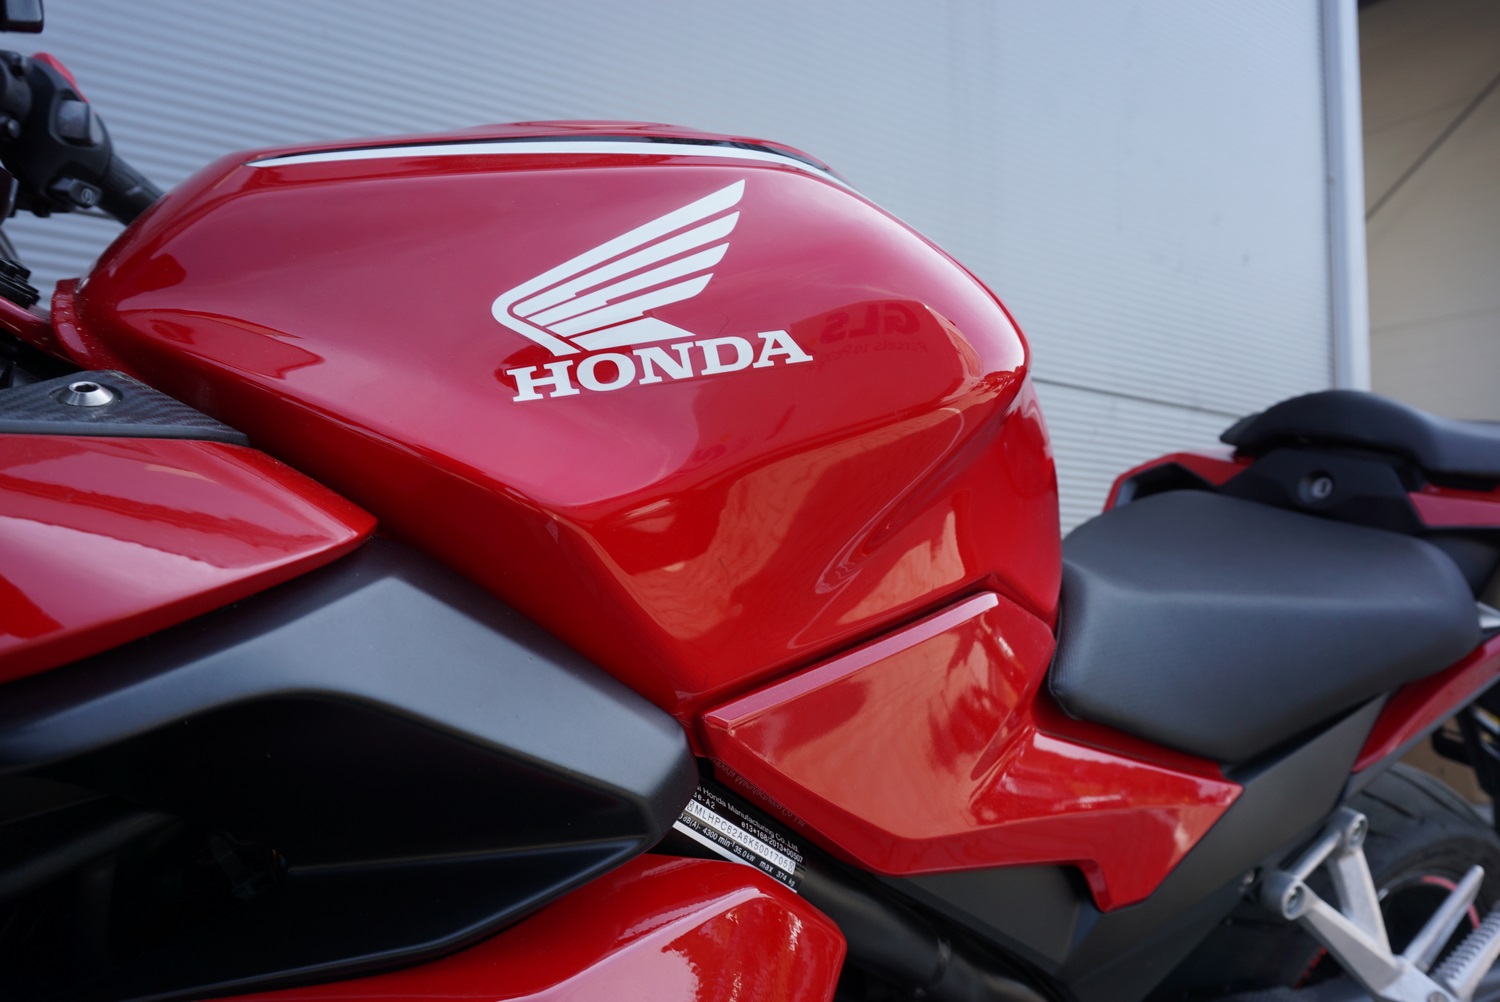 Honda CBR 500 R